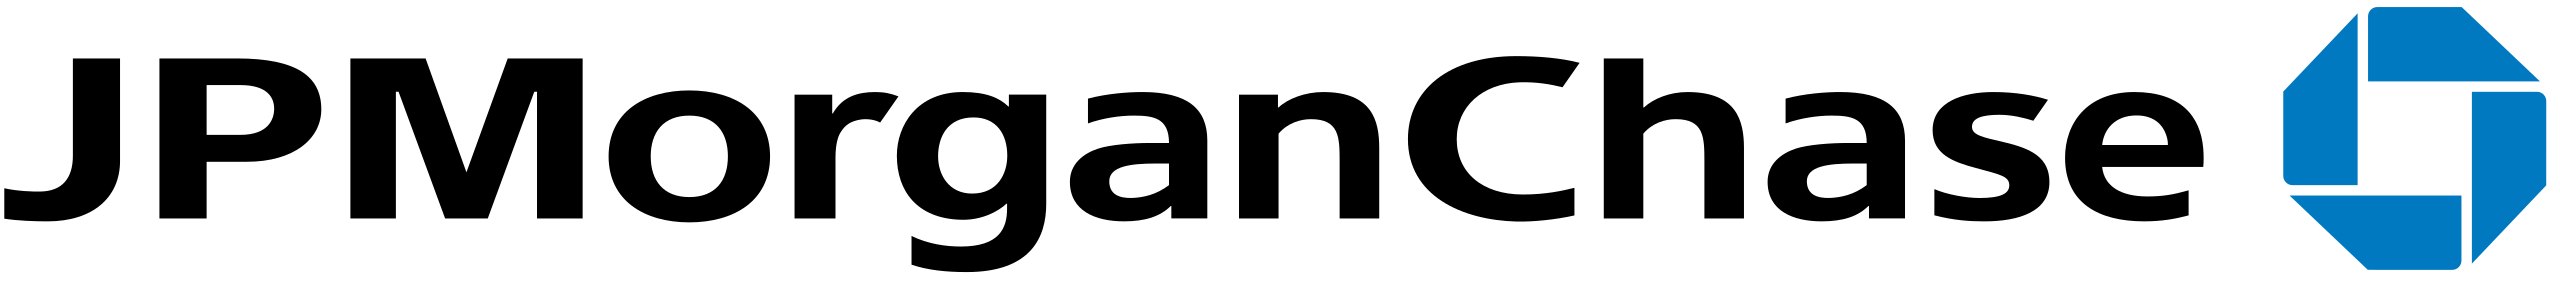 JP Morgan Logo PNG